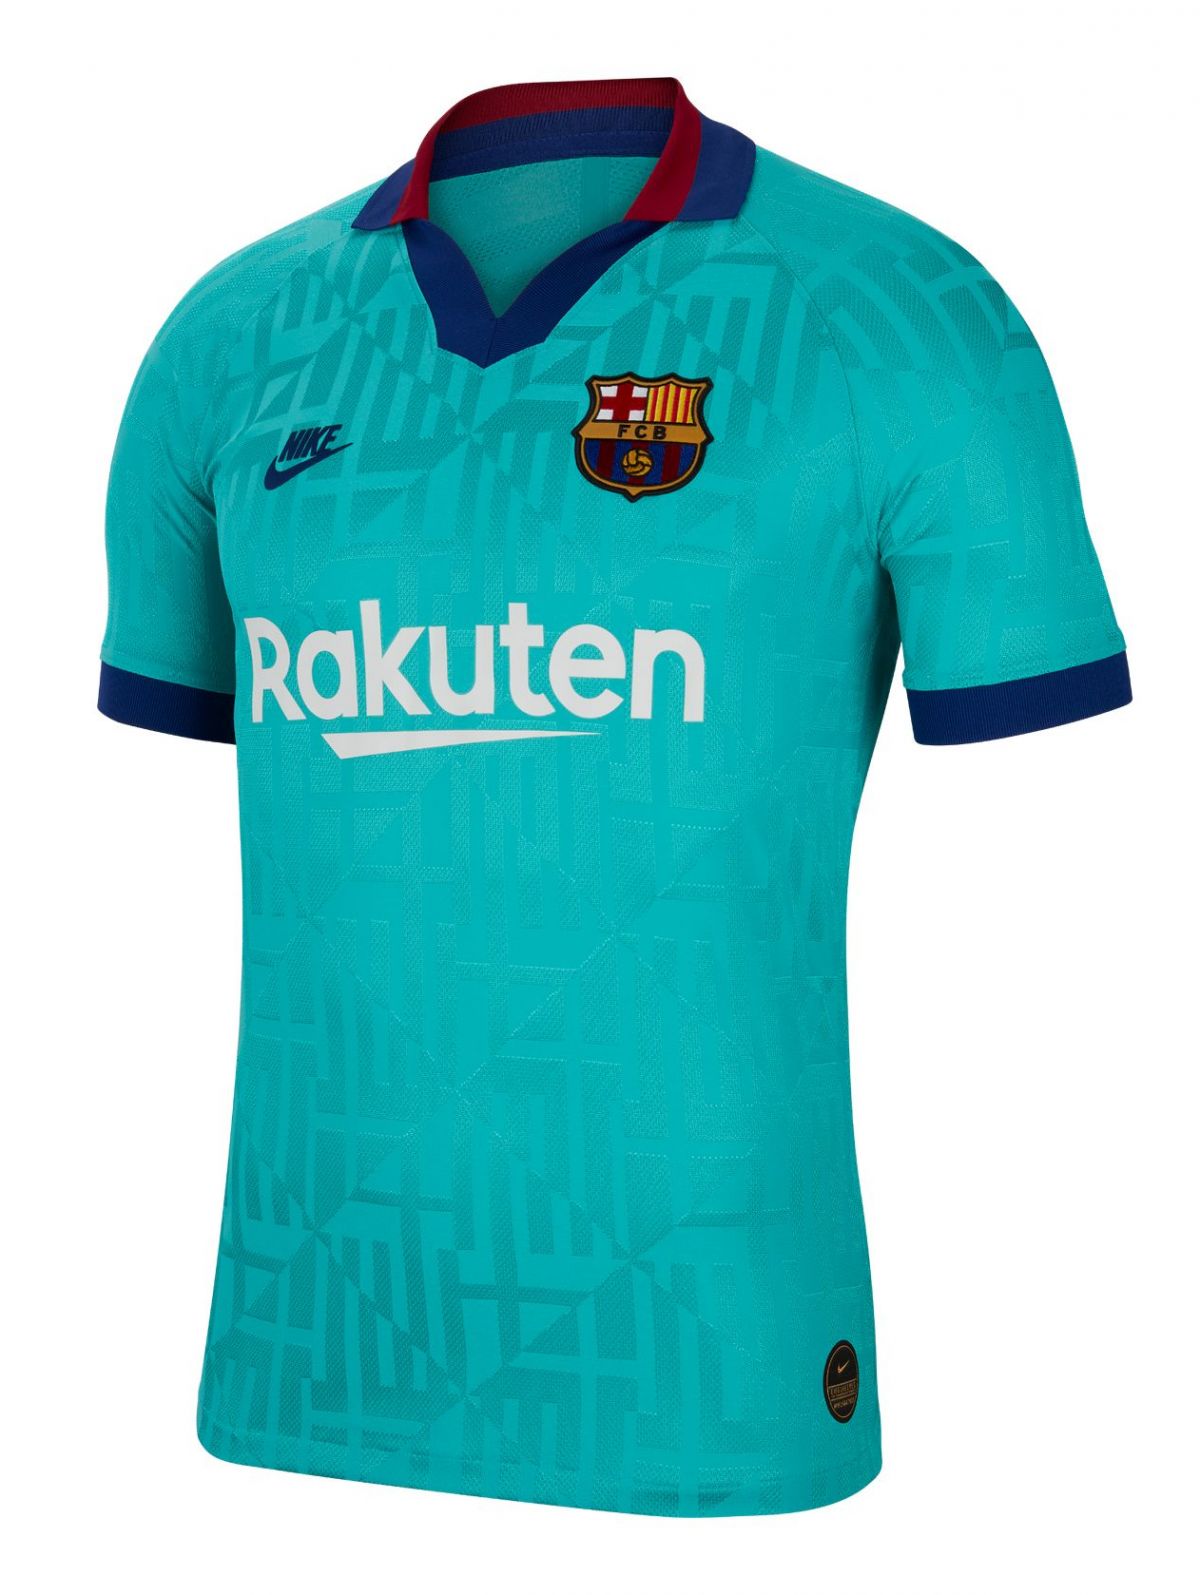 fc barcelona 2019 kit